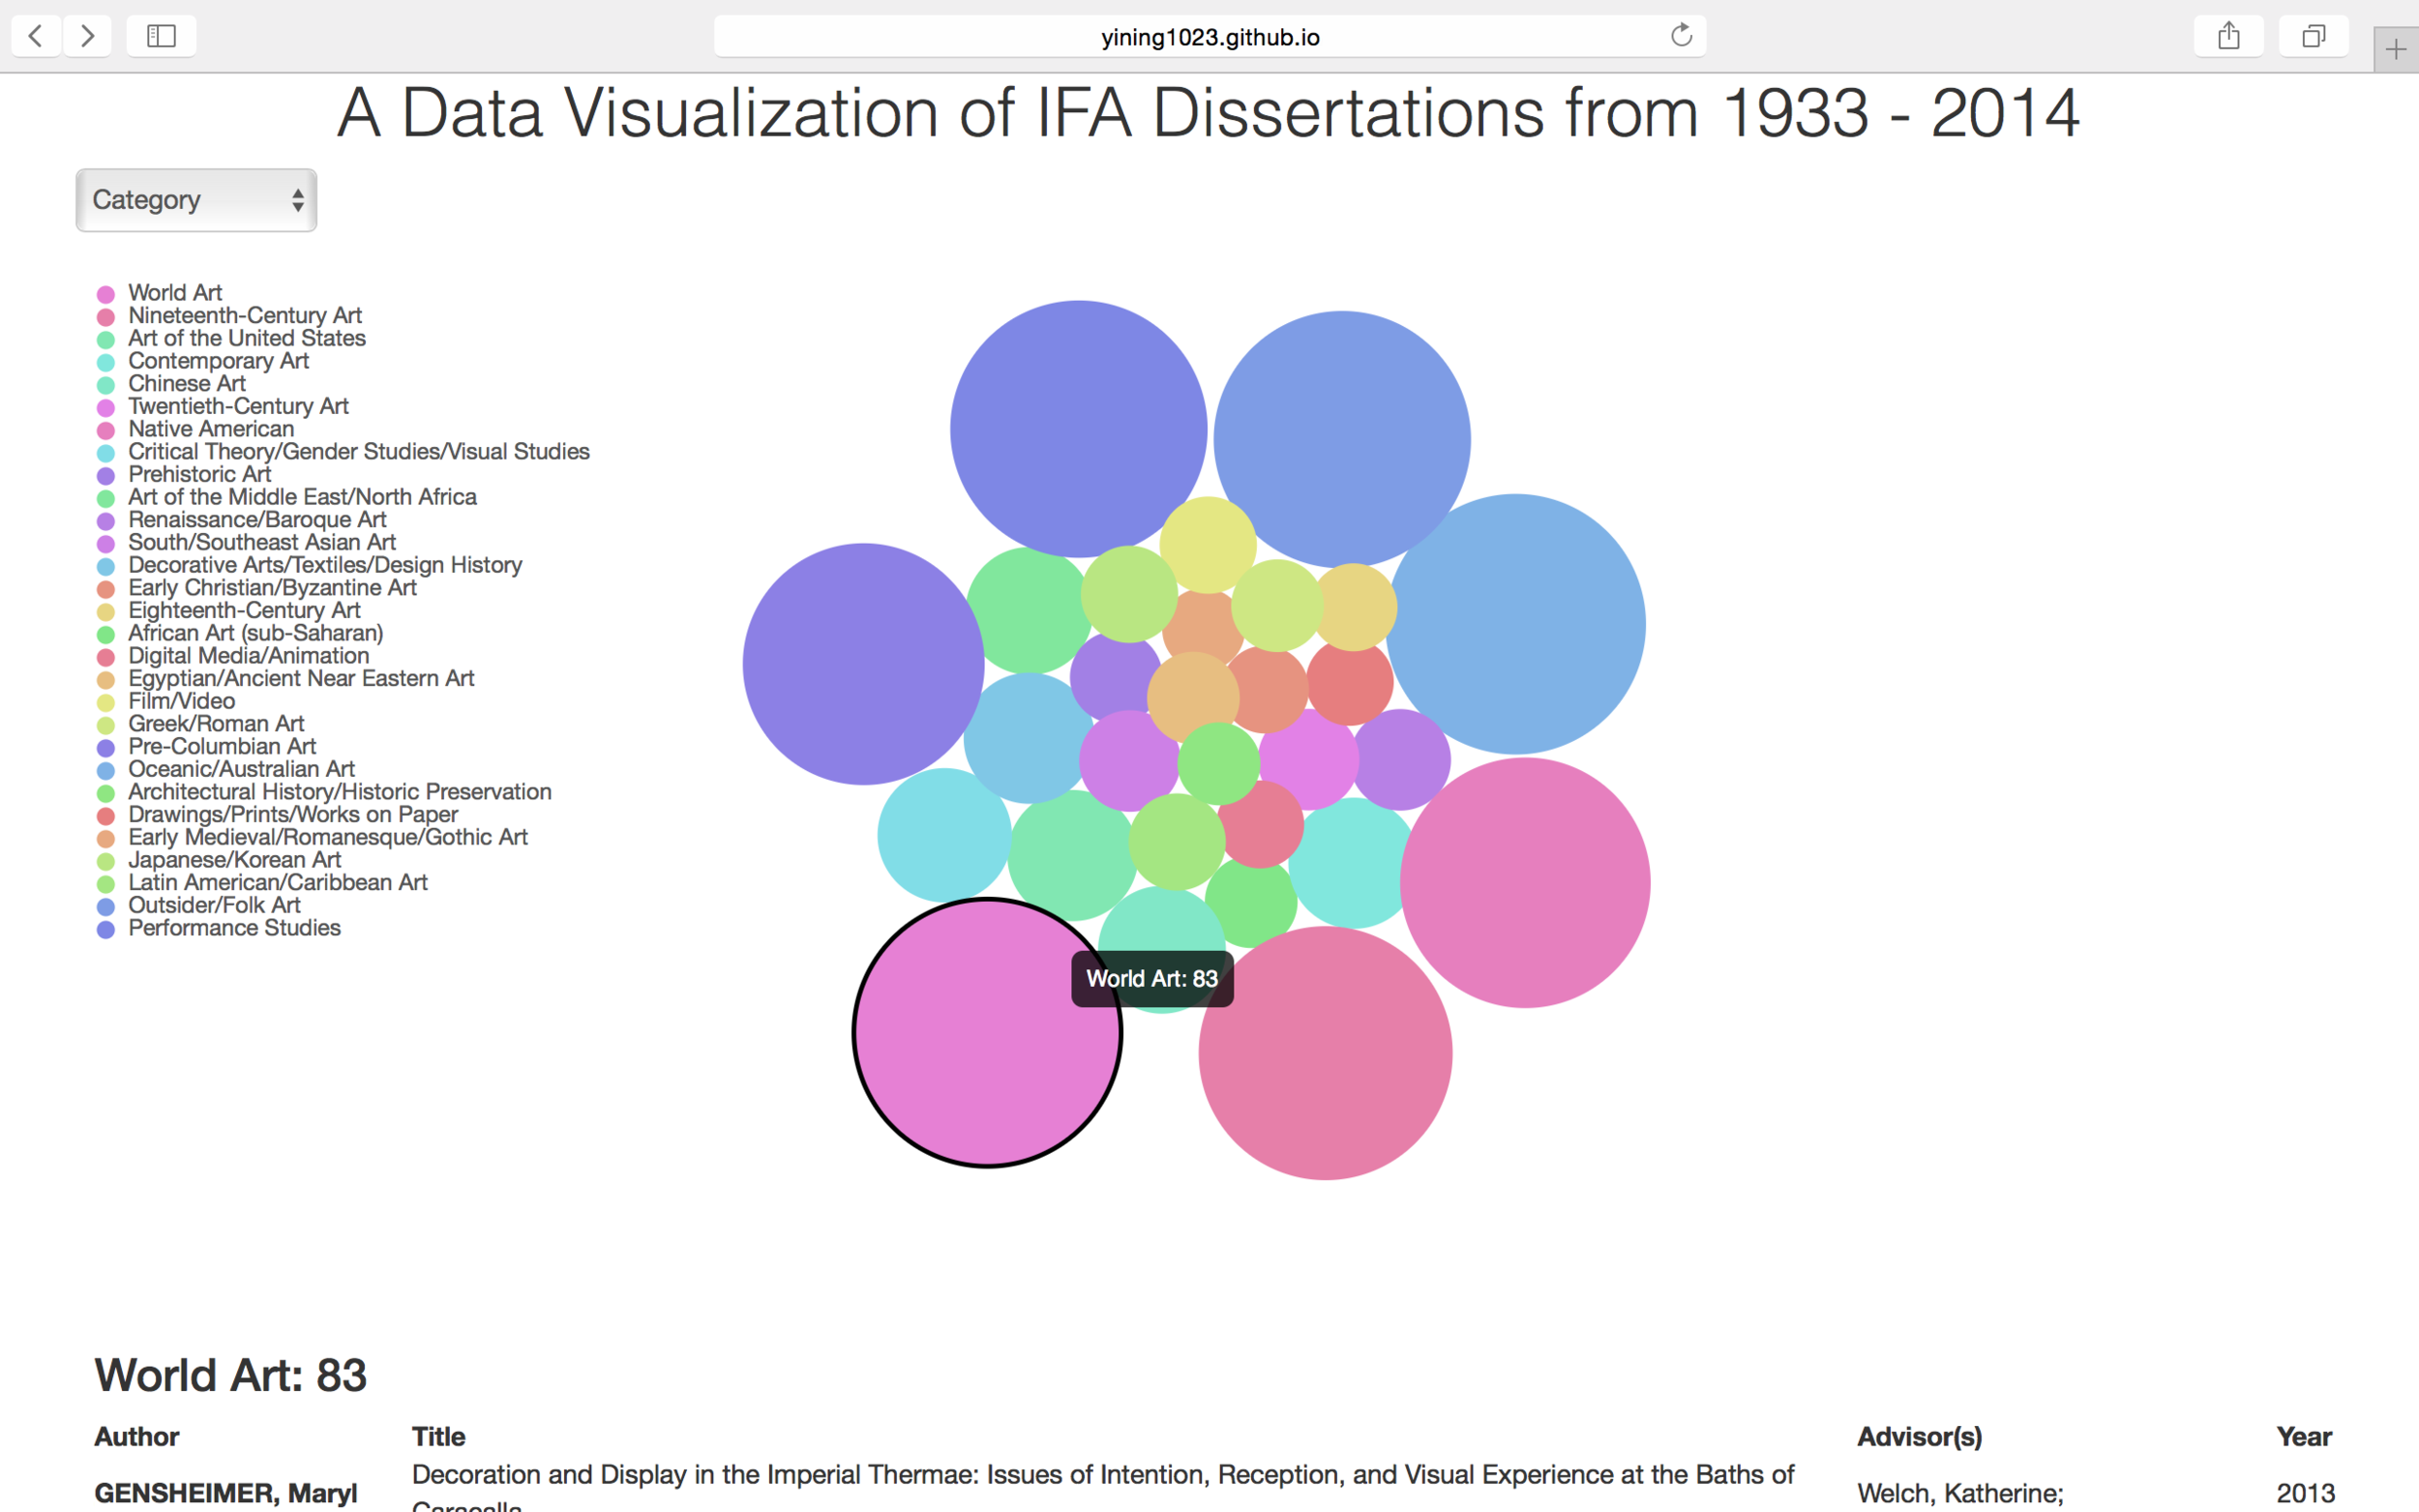 Data Visualization Bubble Chart